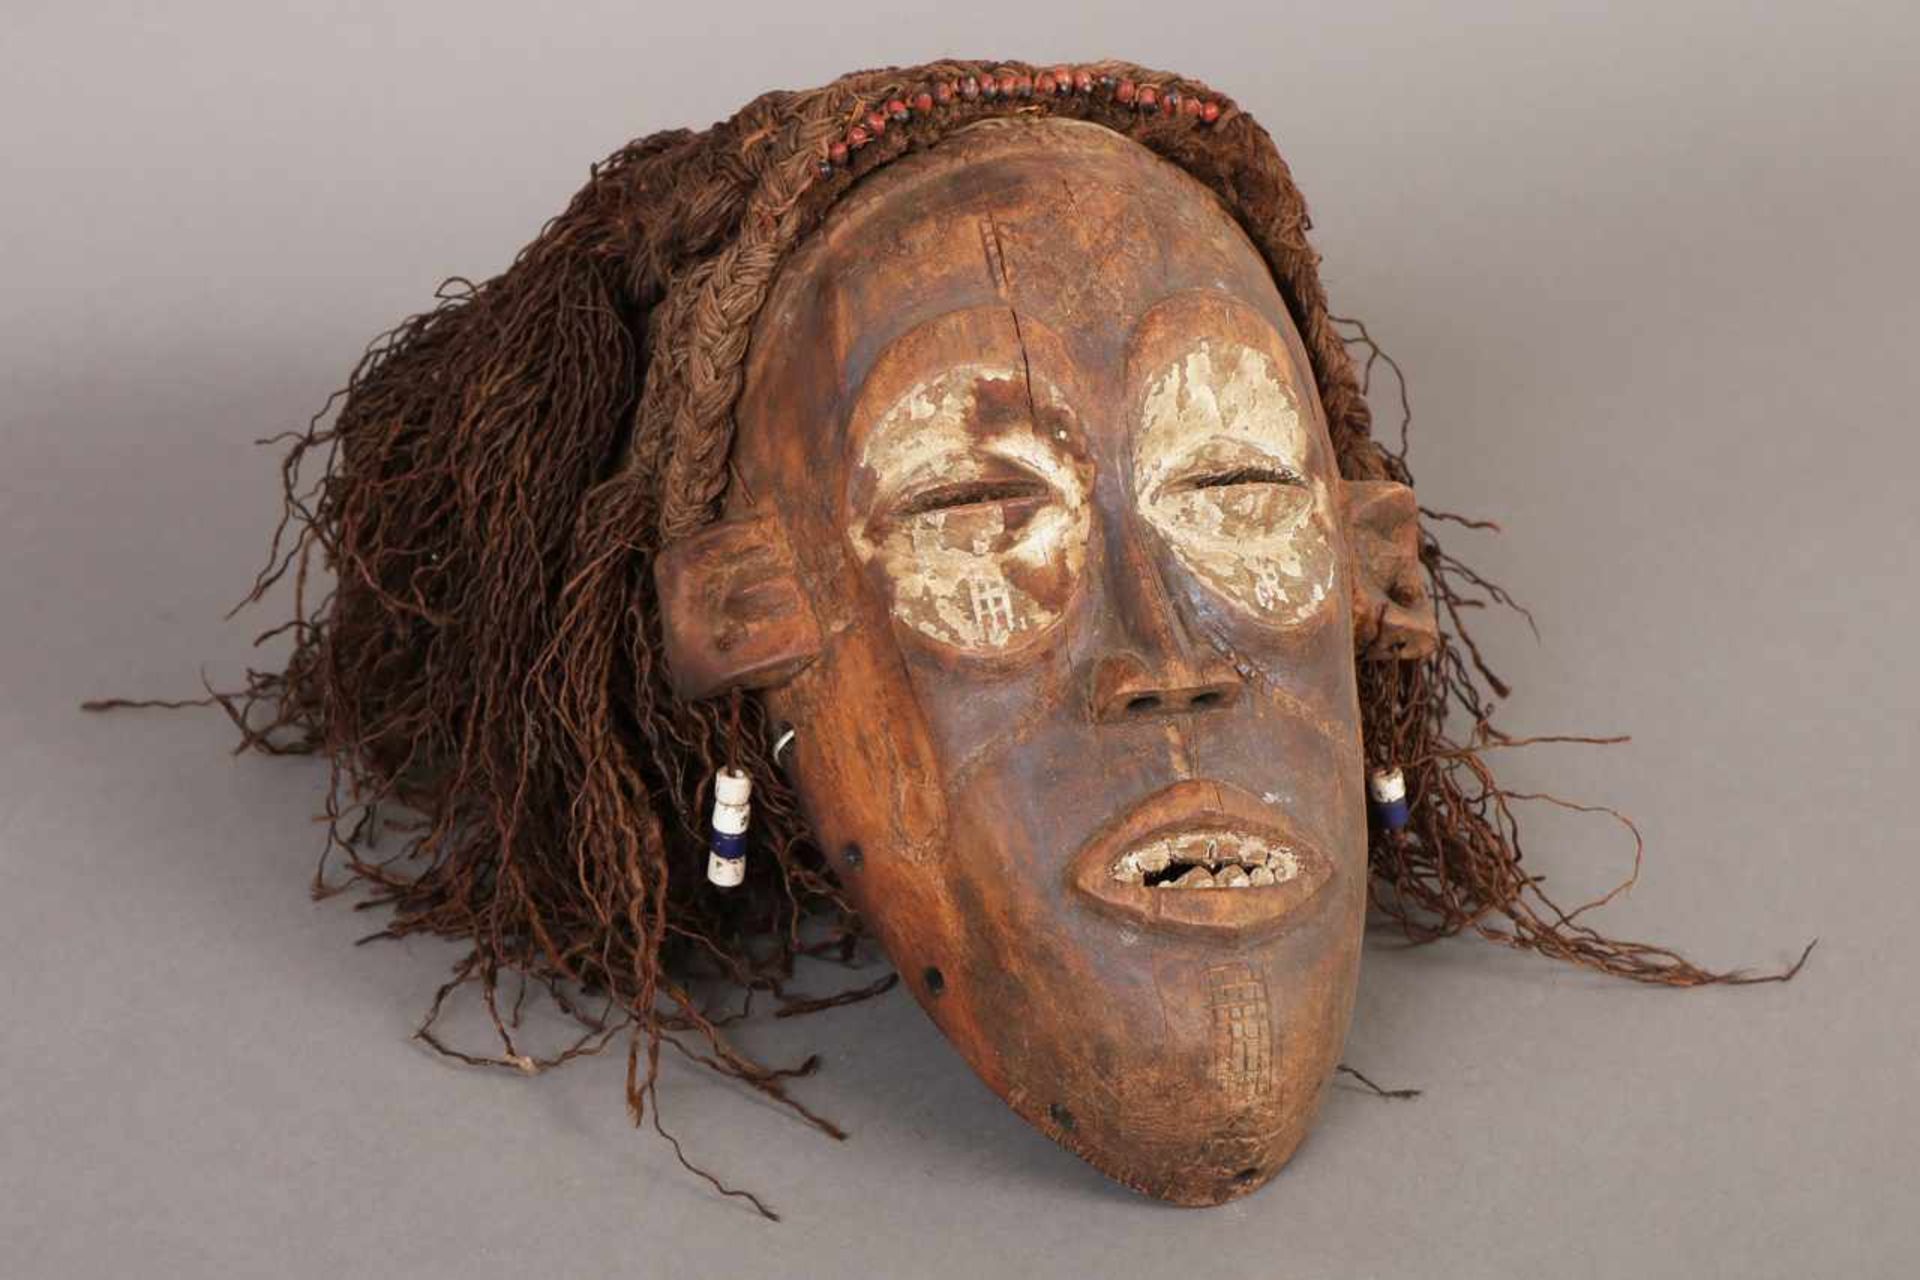 Afrikanische Tanz-/Ritualmaske Holt, Rafia-Geflecht und Beads, wohl Pende, Kongo, männliches Gesicht